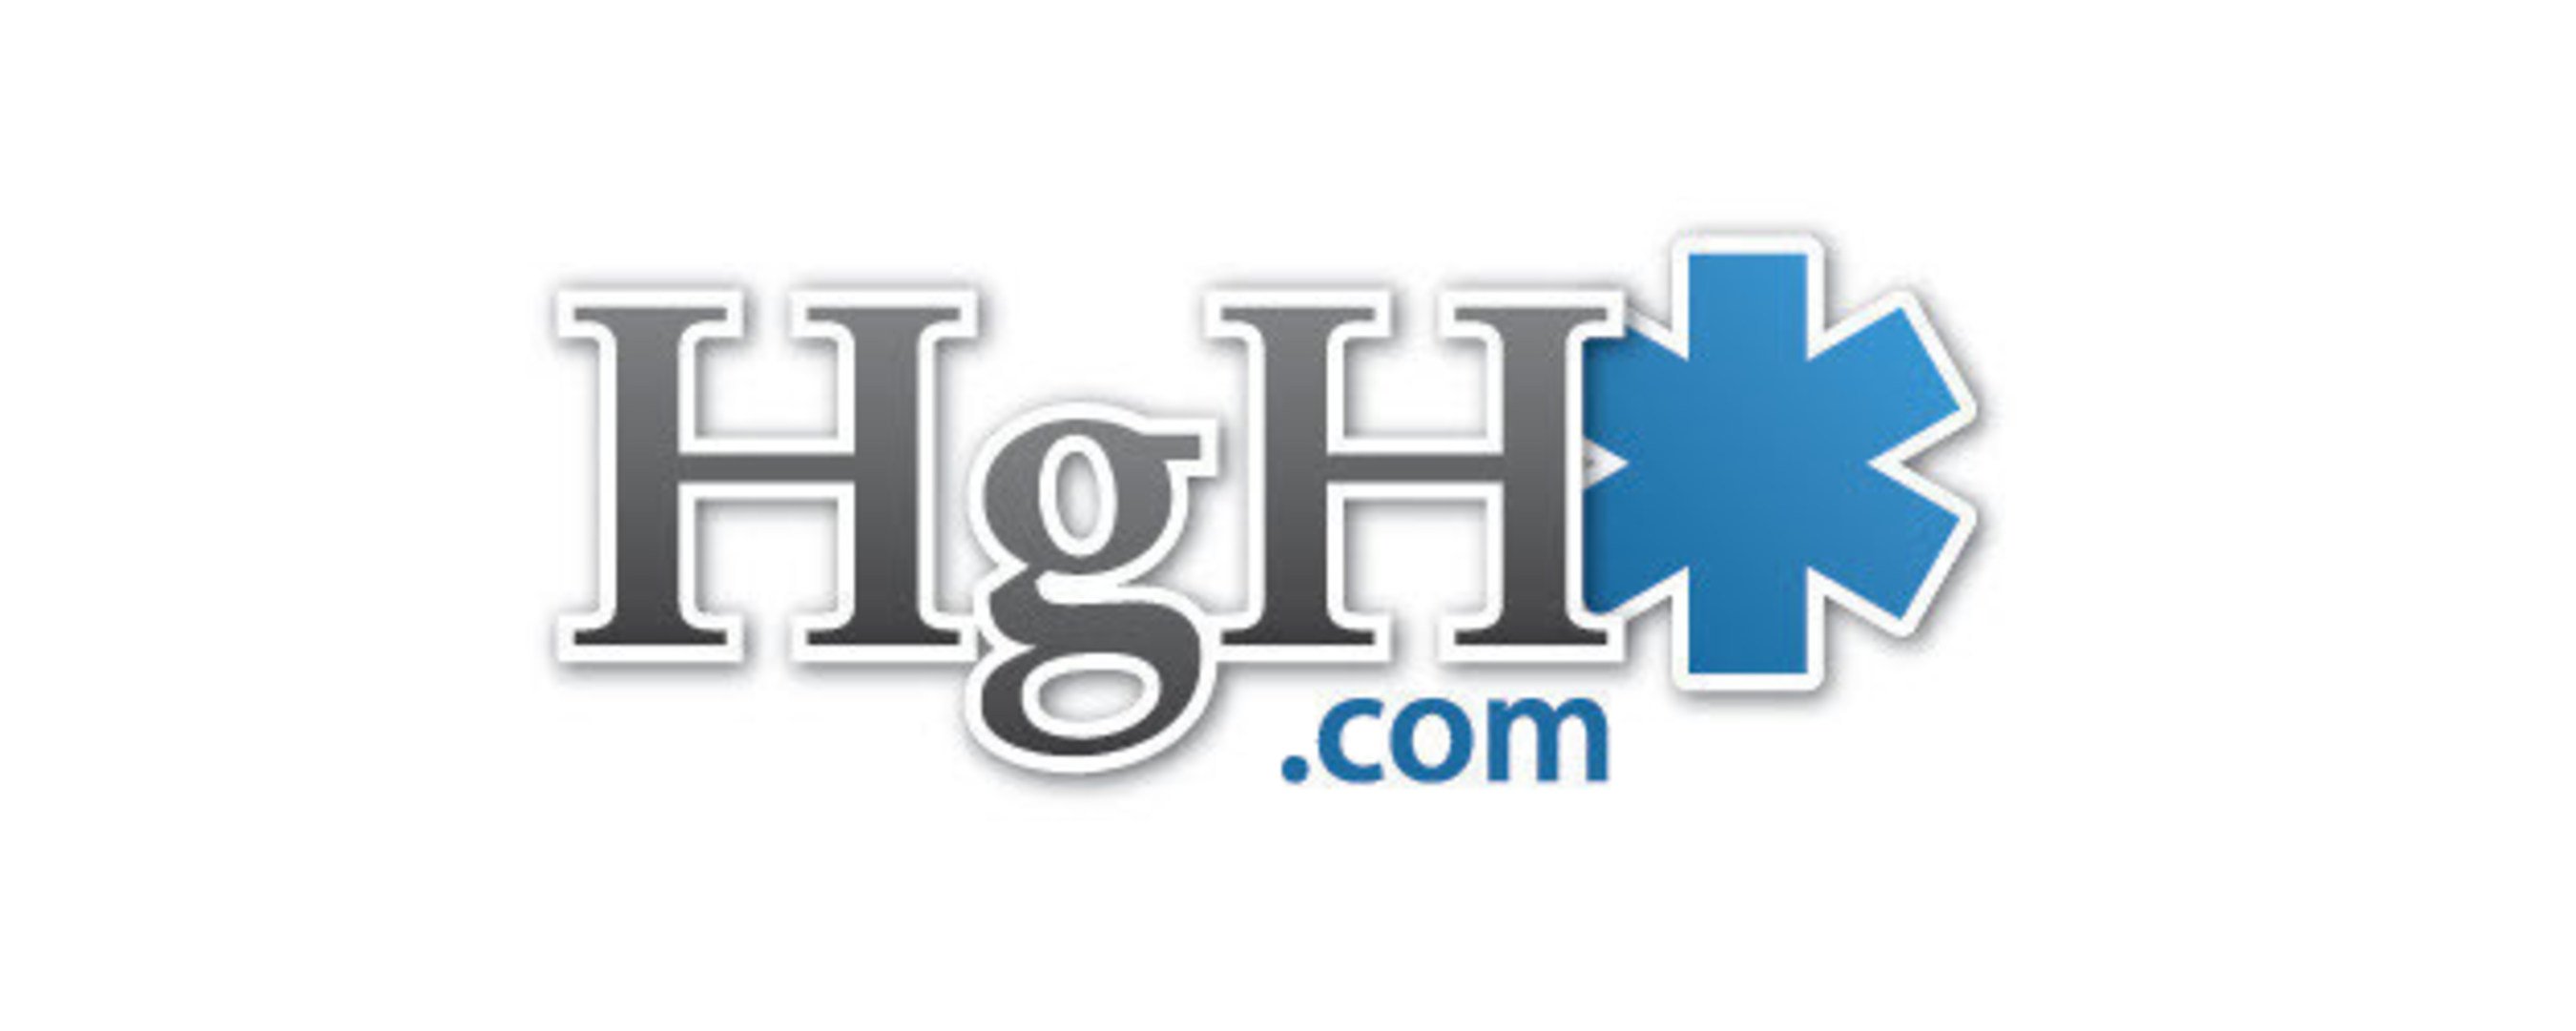 hgh.com logo